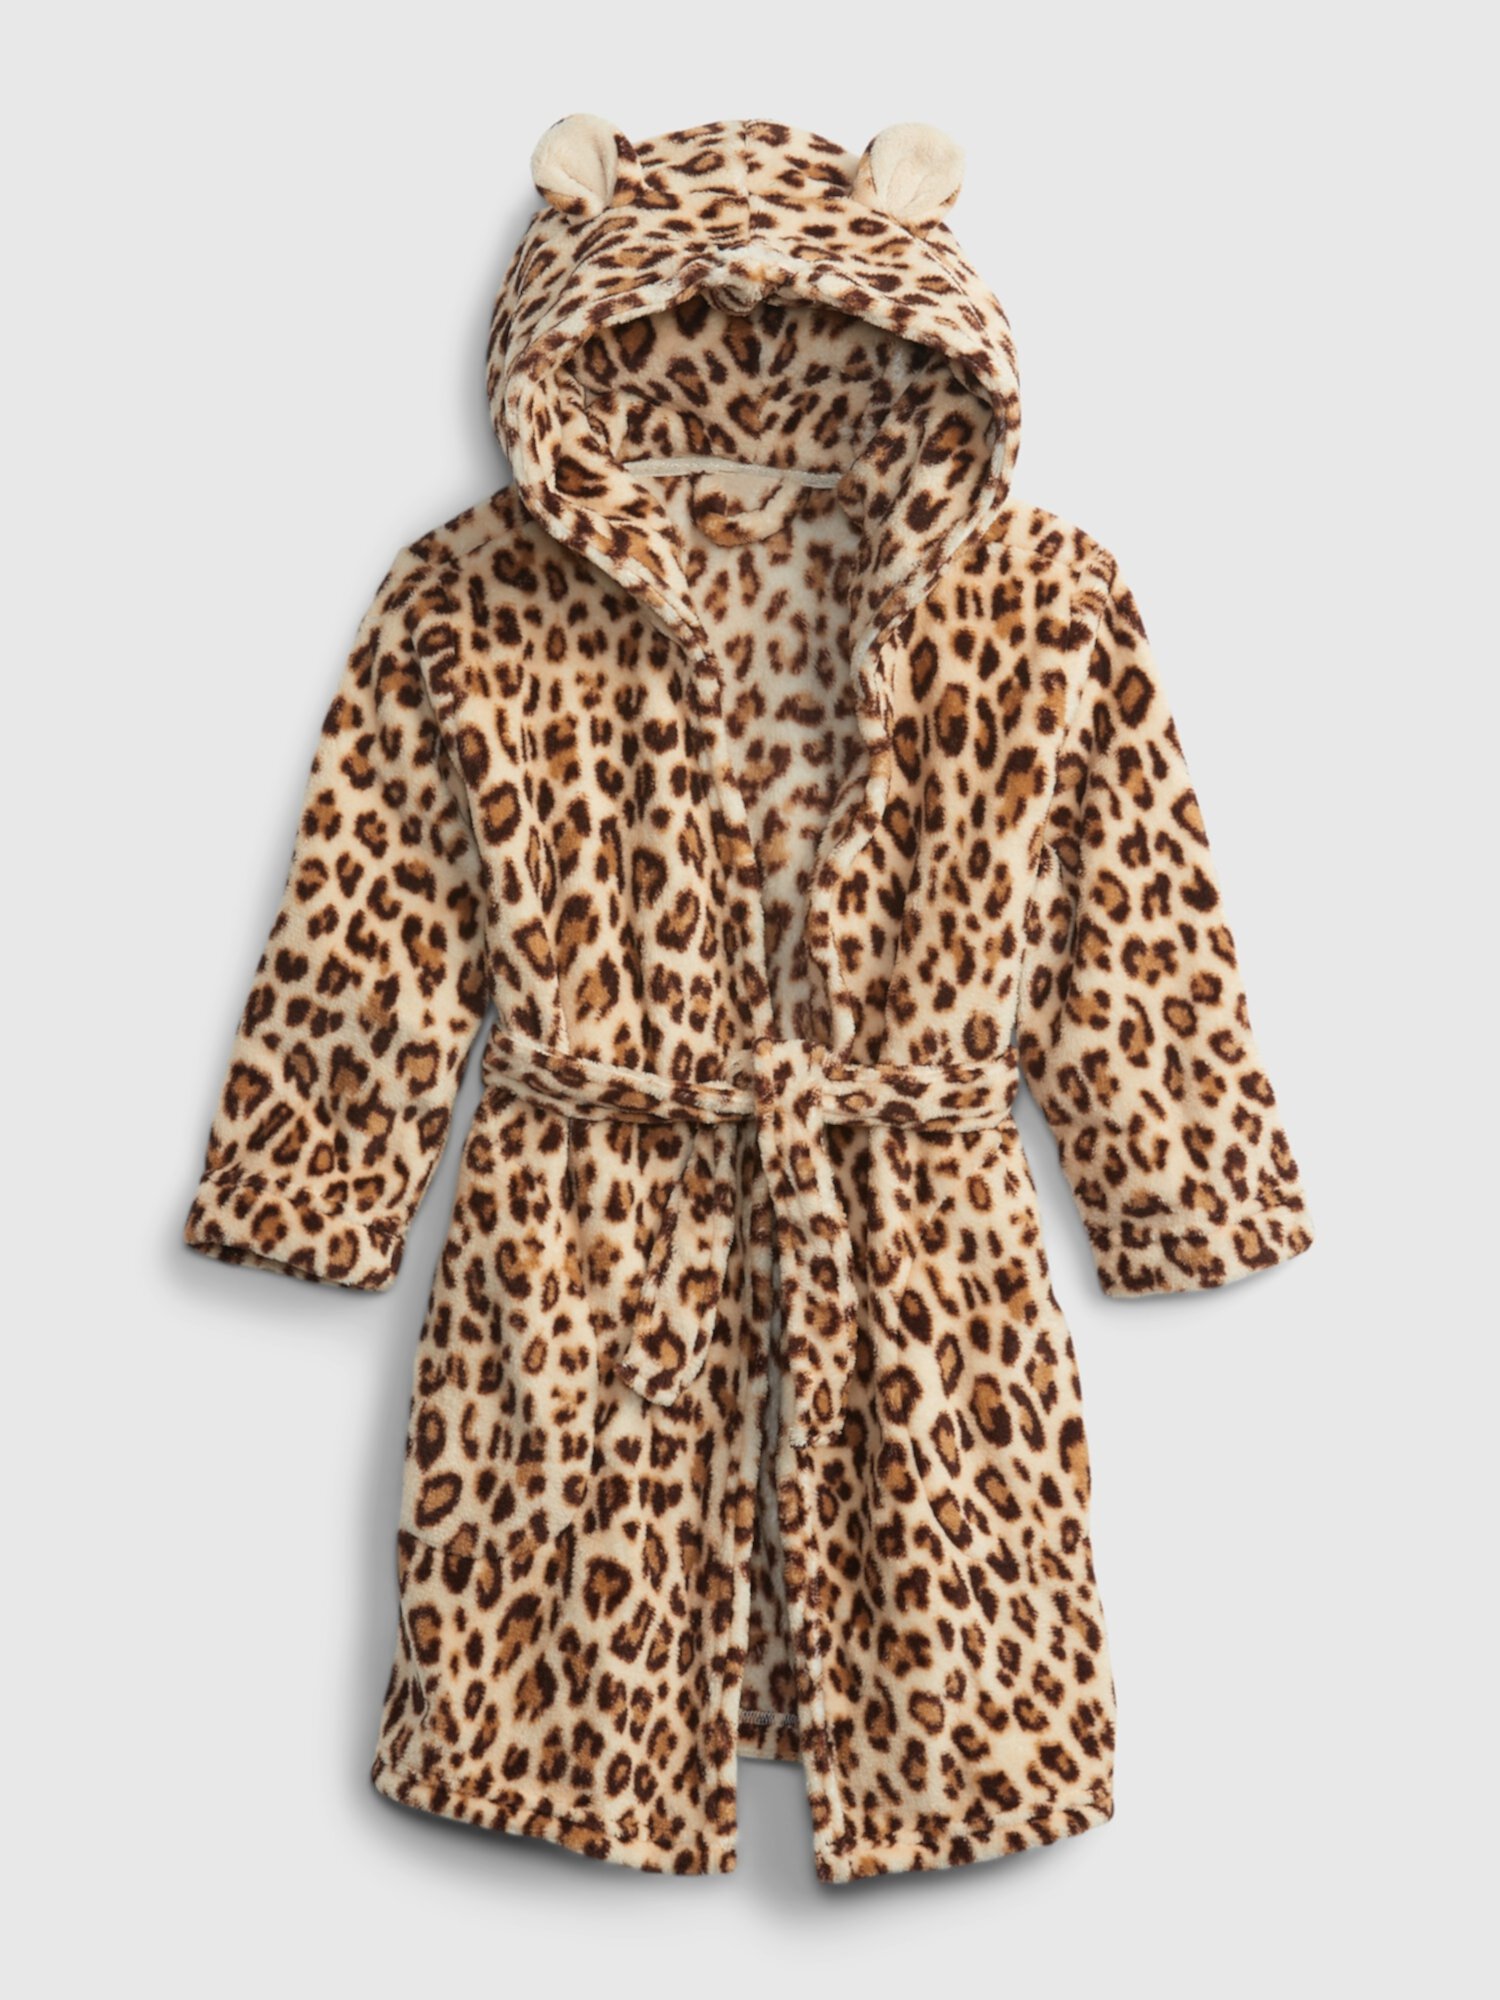 Детский халат с леопардовым принтом Gap